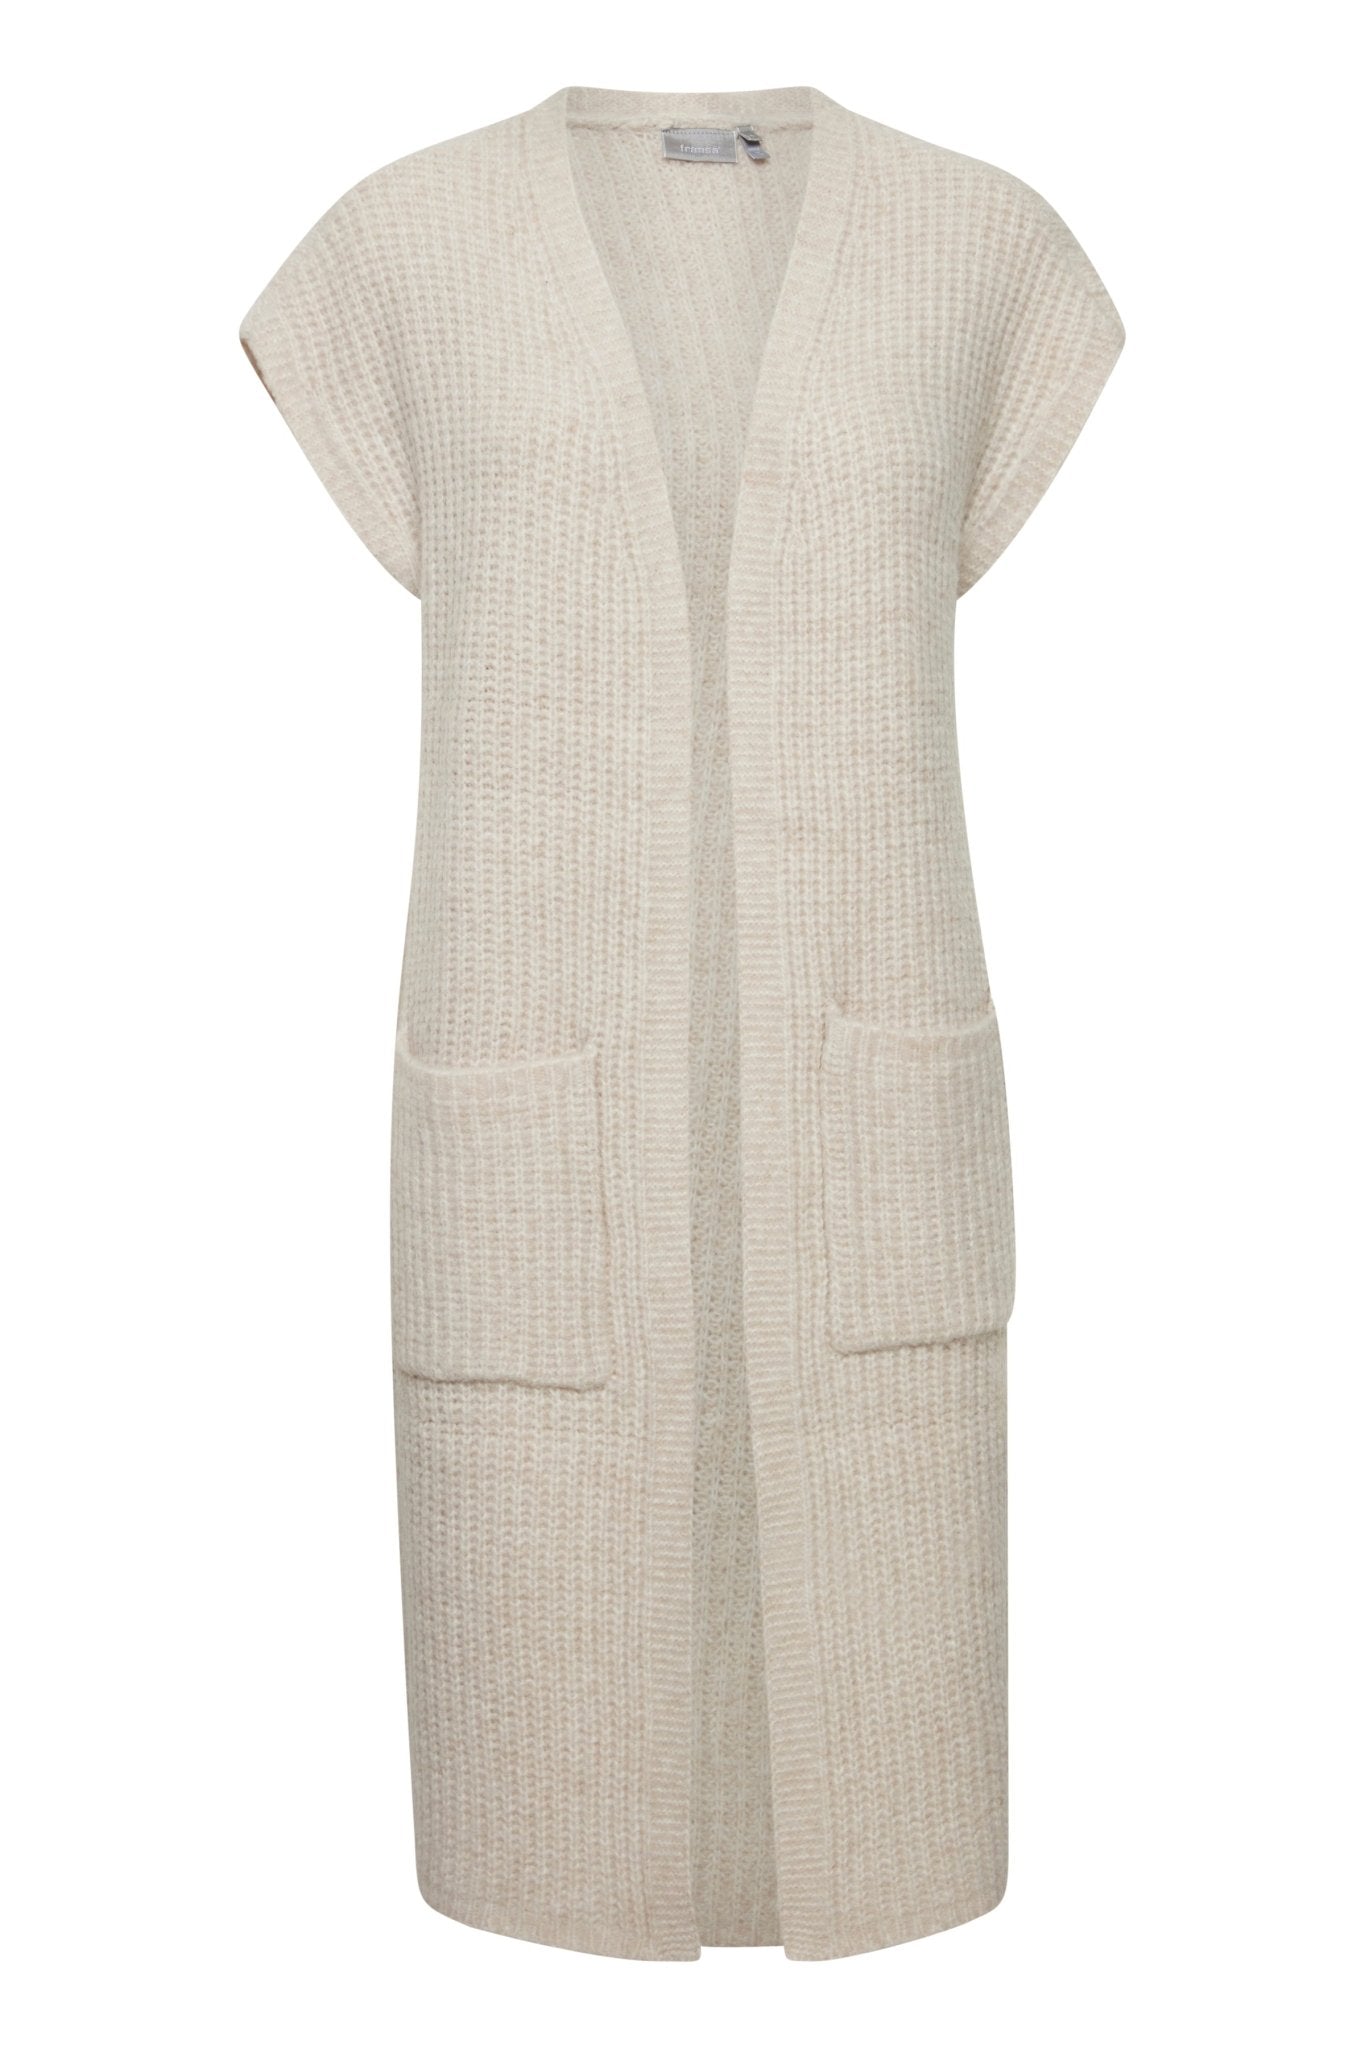 Beverly long knit vest by Fransa - limestone - Blue Sky Fashions & Lingerie